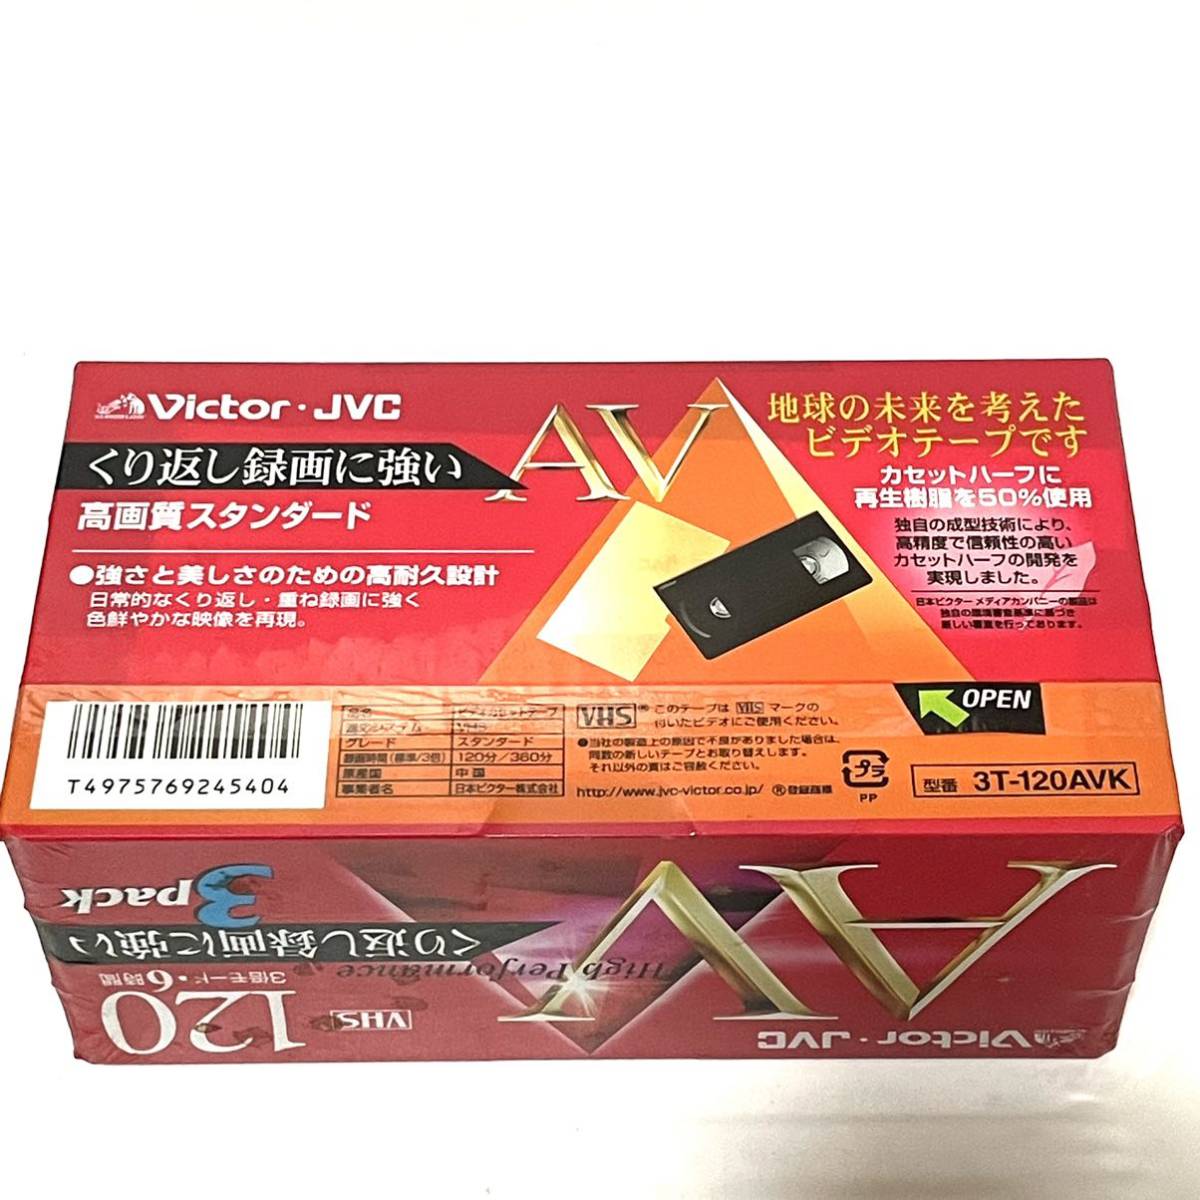 新品送料無料 VICTOR ビデオテープKシリーズ 3T-120AVK VHSビデオテープ